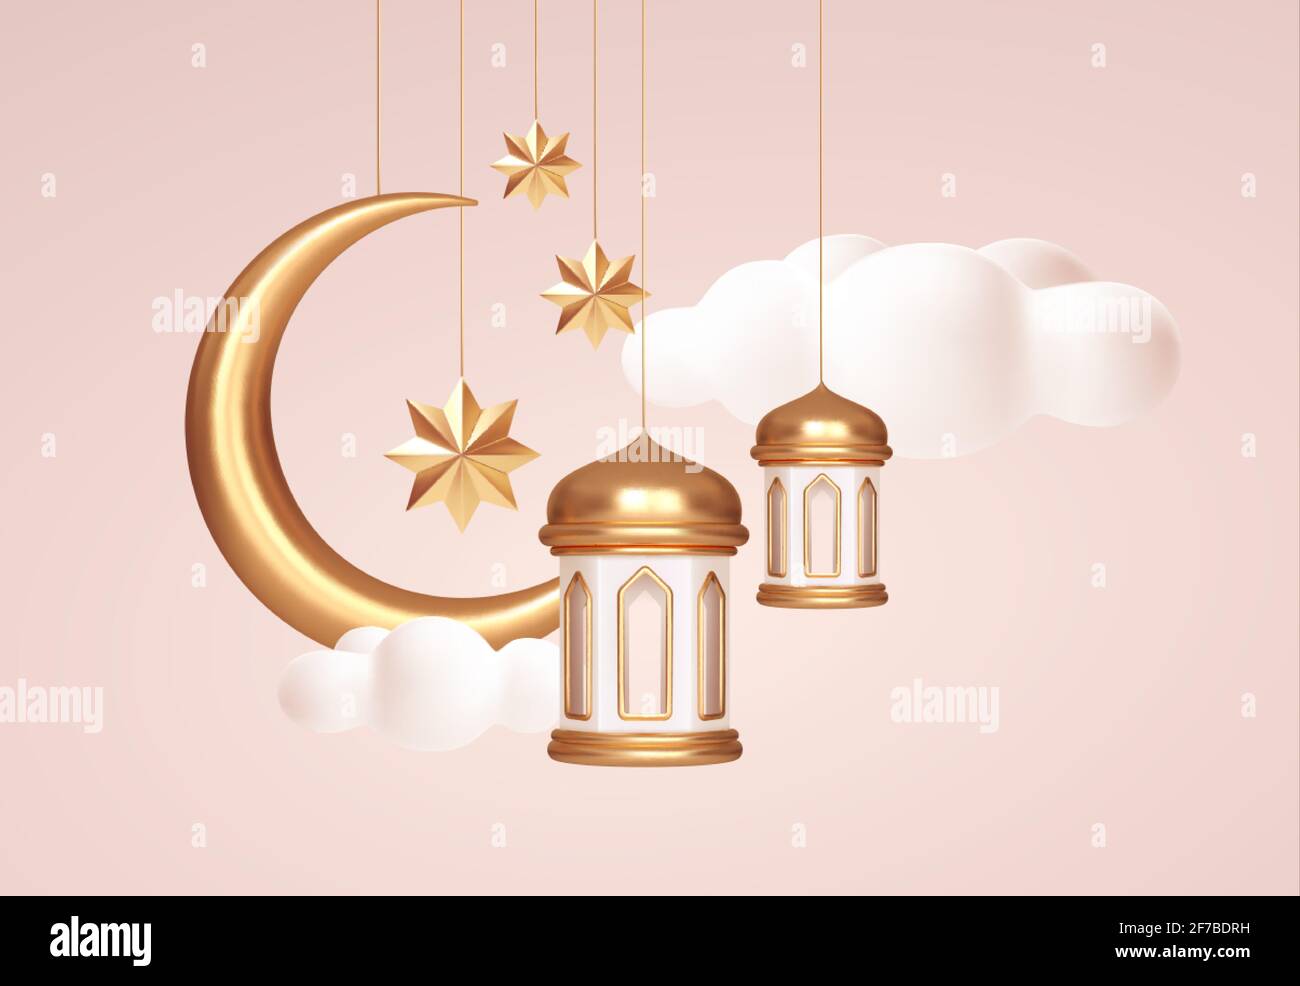 Eid Mubarak 3d realistische Symbole der arabischen islamischen Feiertage. Halbmond, Sterne, Laternen. Vektorgrafik Stock Vektor